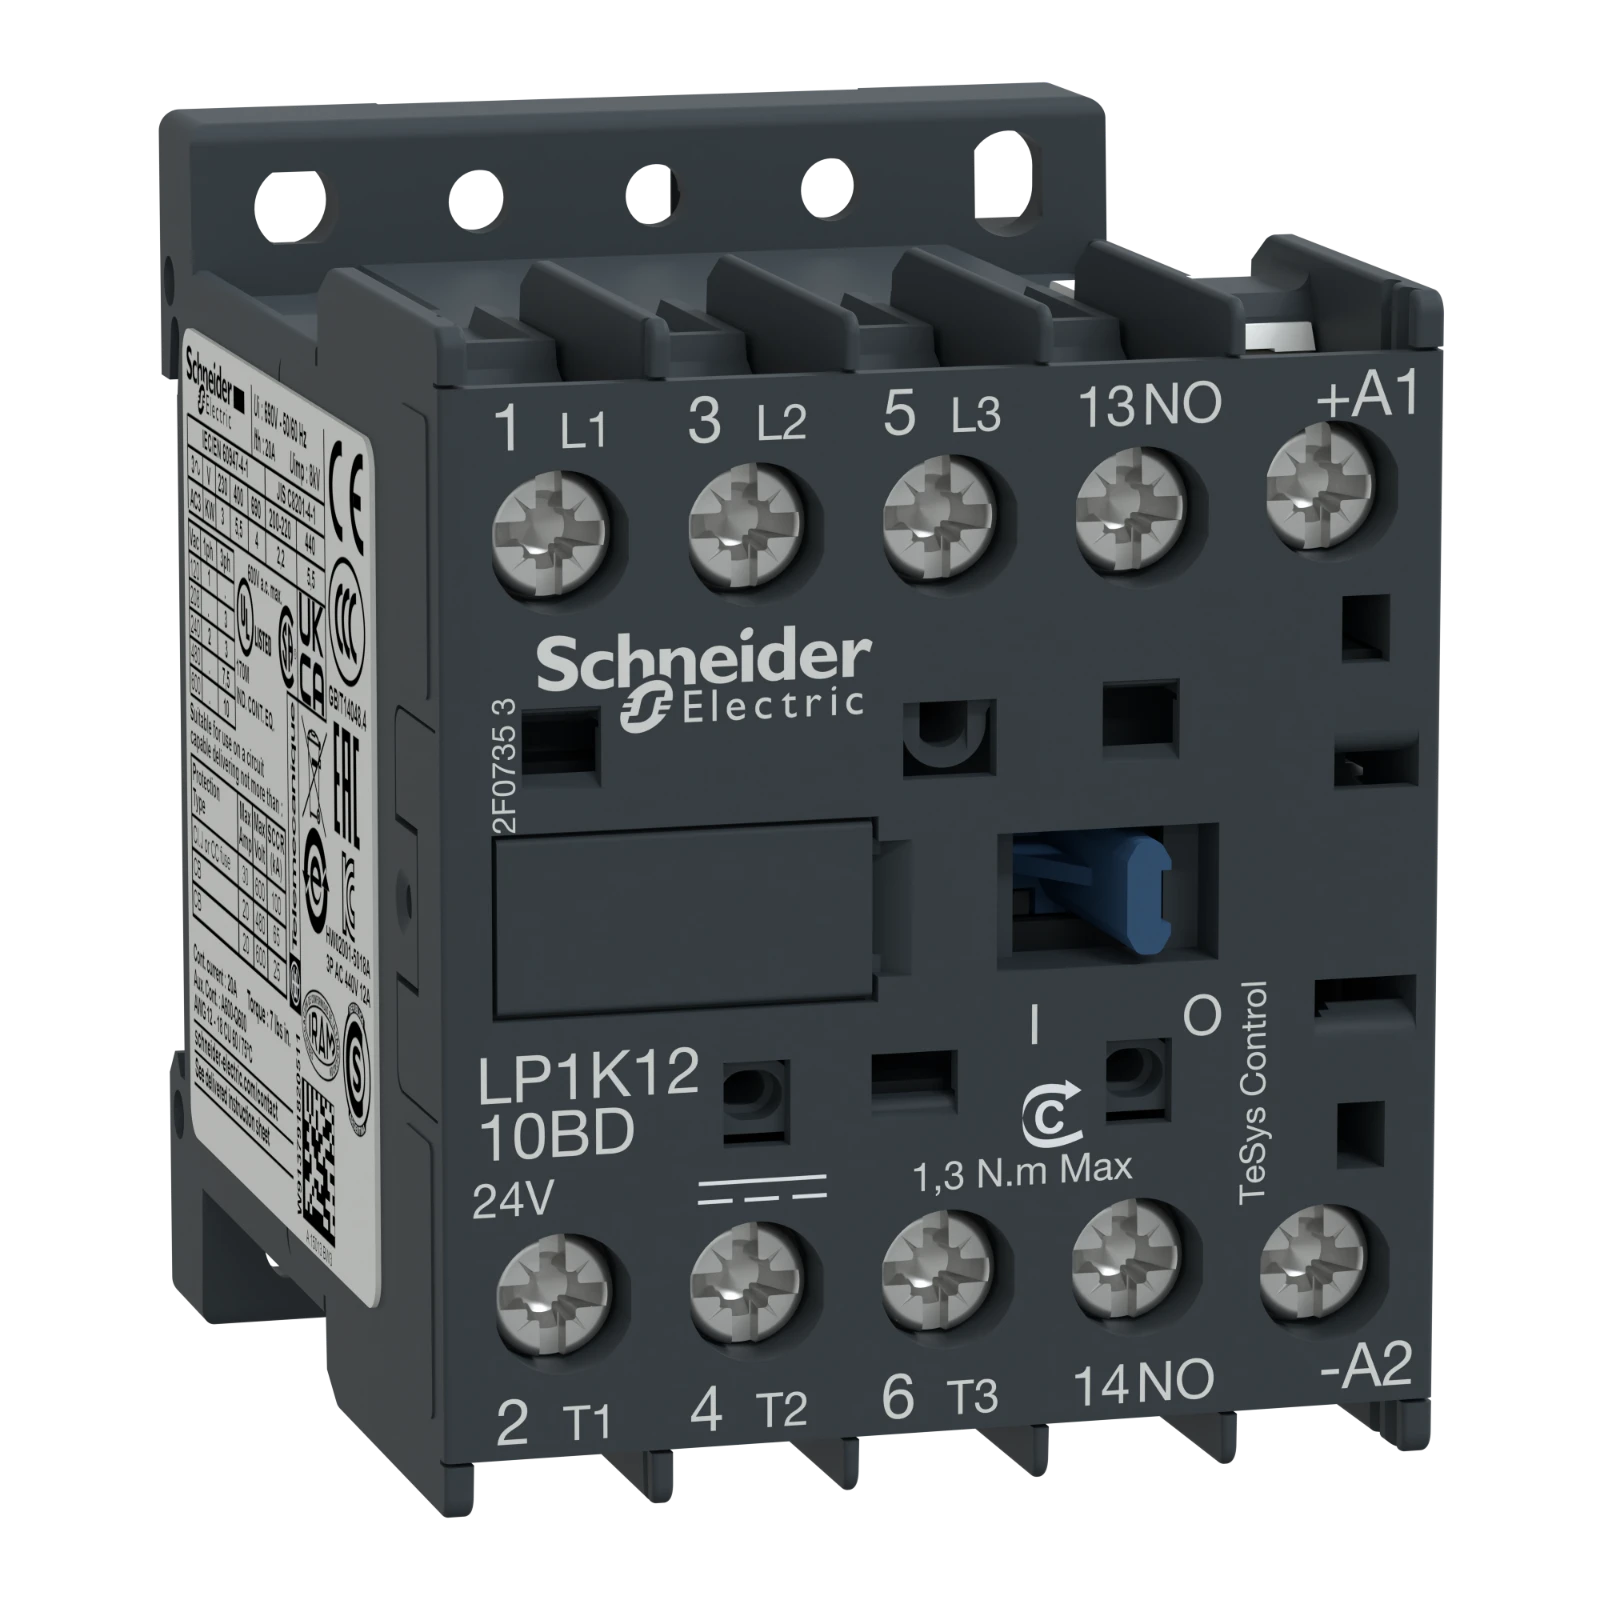 1042842 - Schneider Electric LP1K1210BD